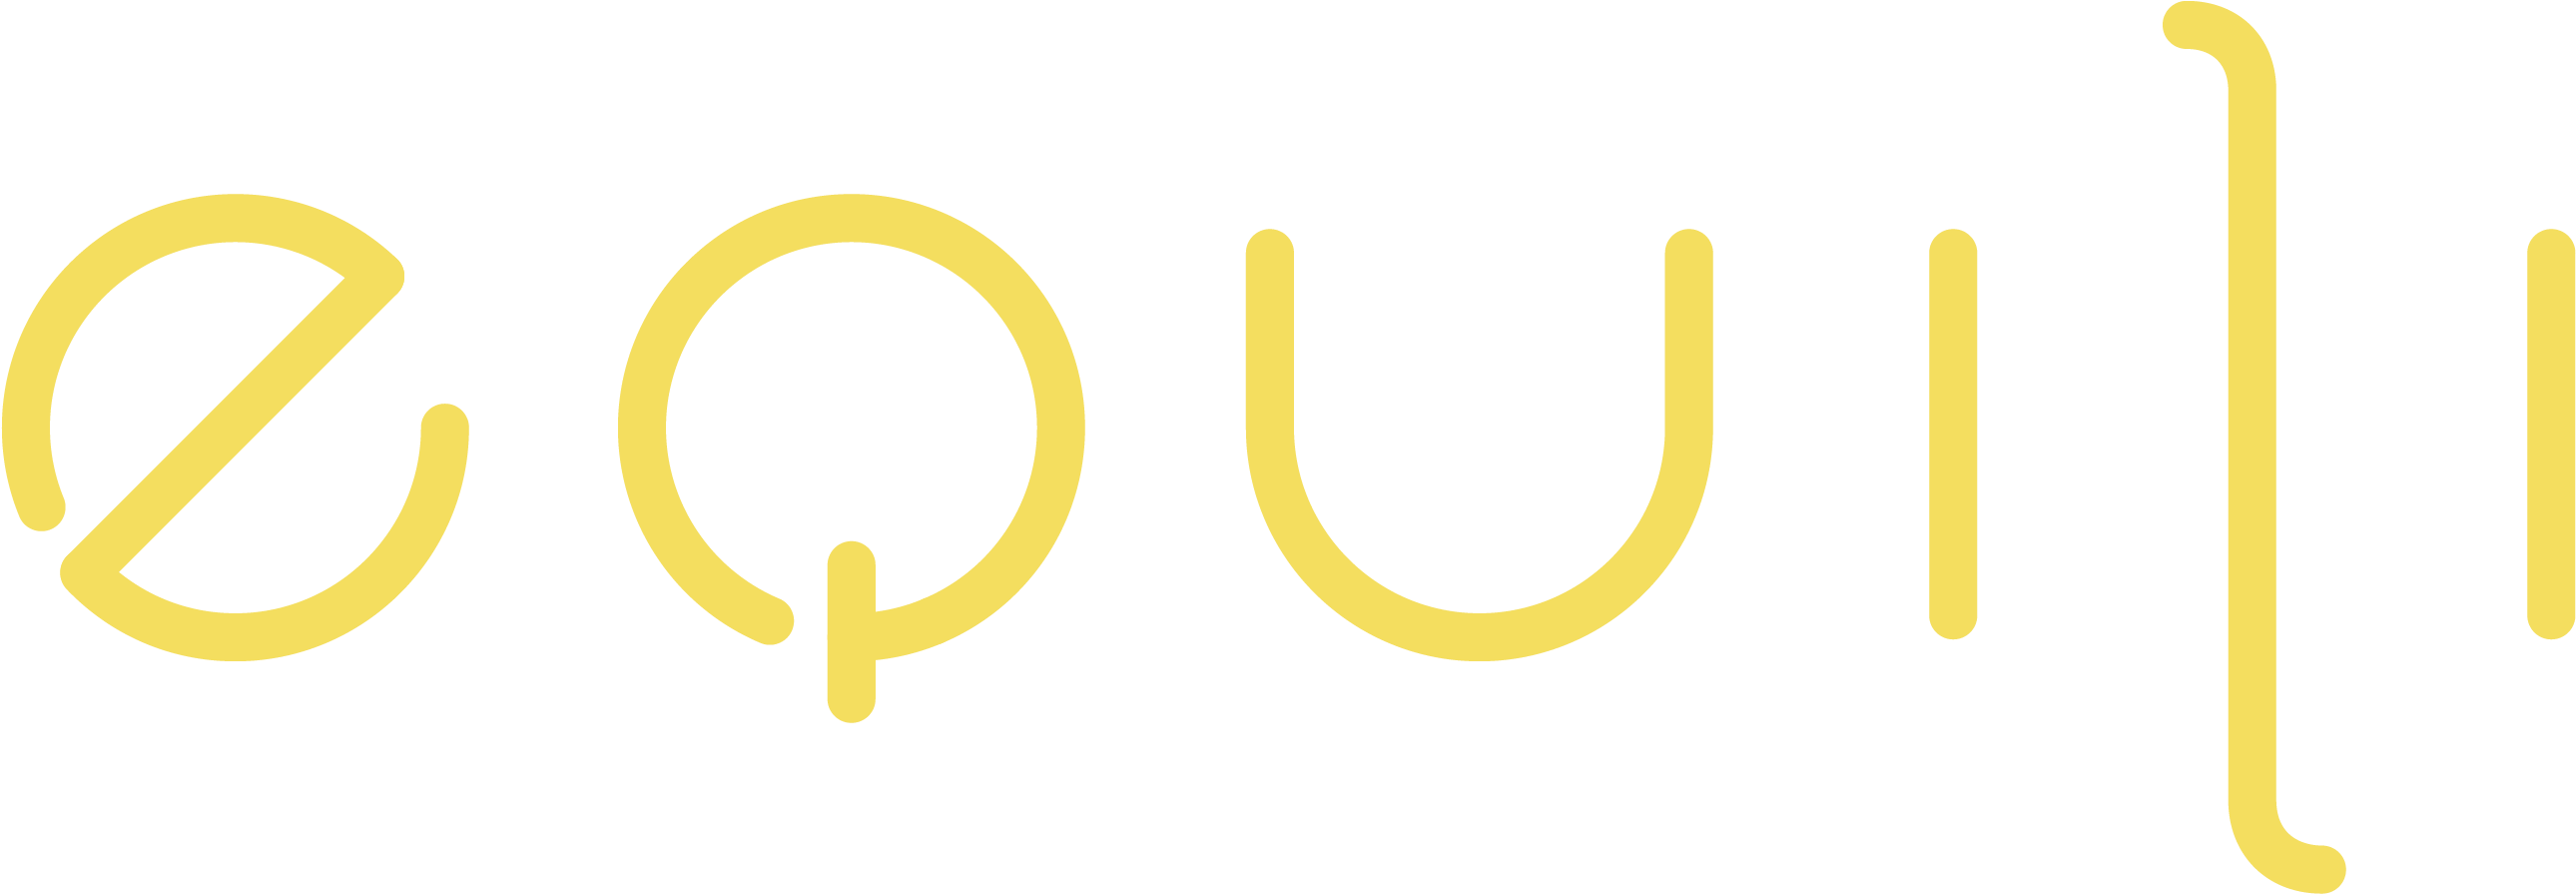 Equili Logo Full Set Equili Gold - Circle (2757x1074), Png Download